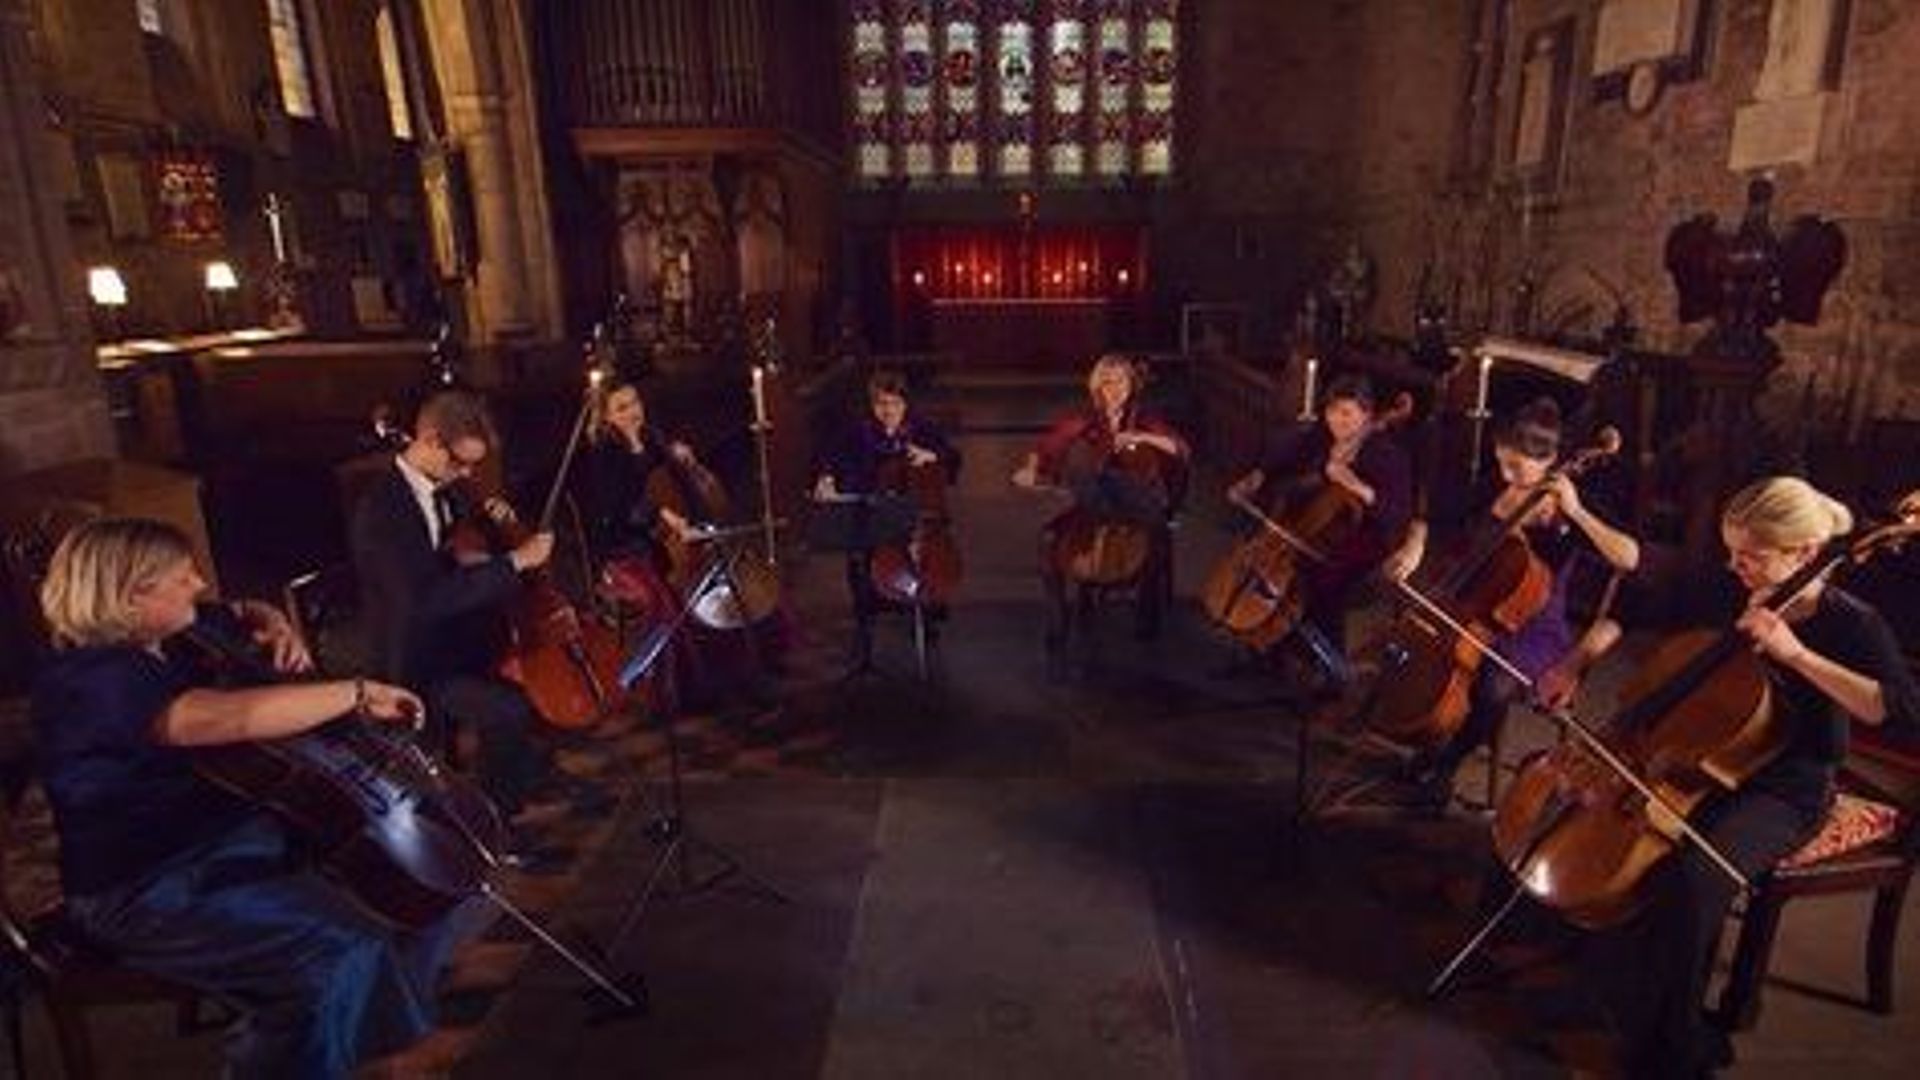 Silent Night interprété par huit violoncelles, la magie de Noël opère